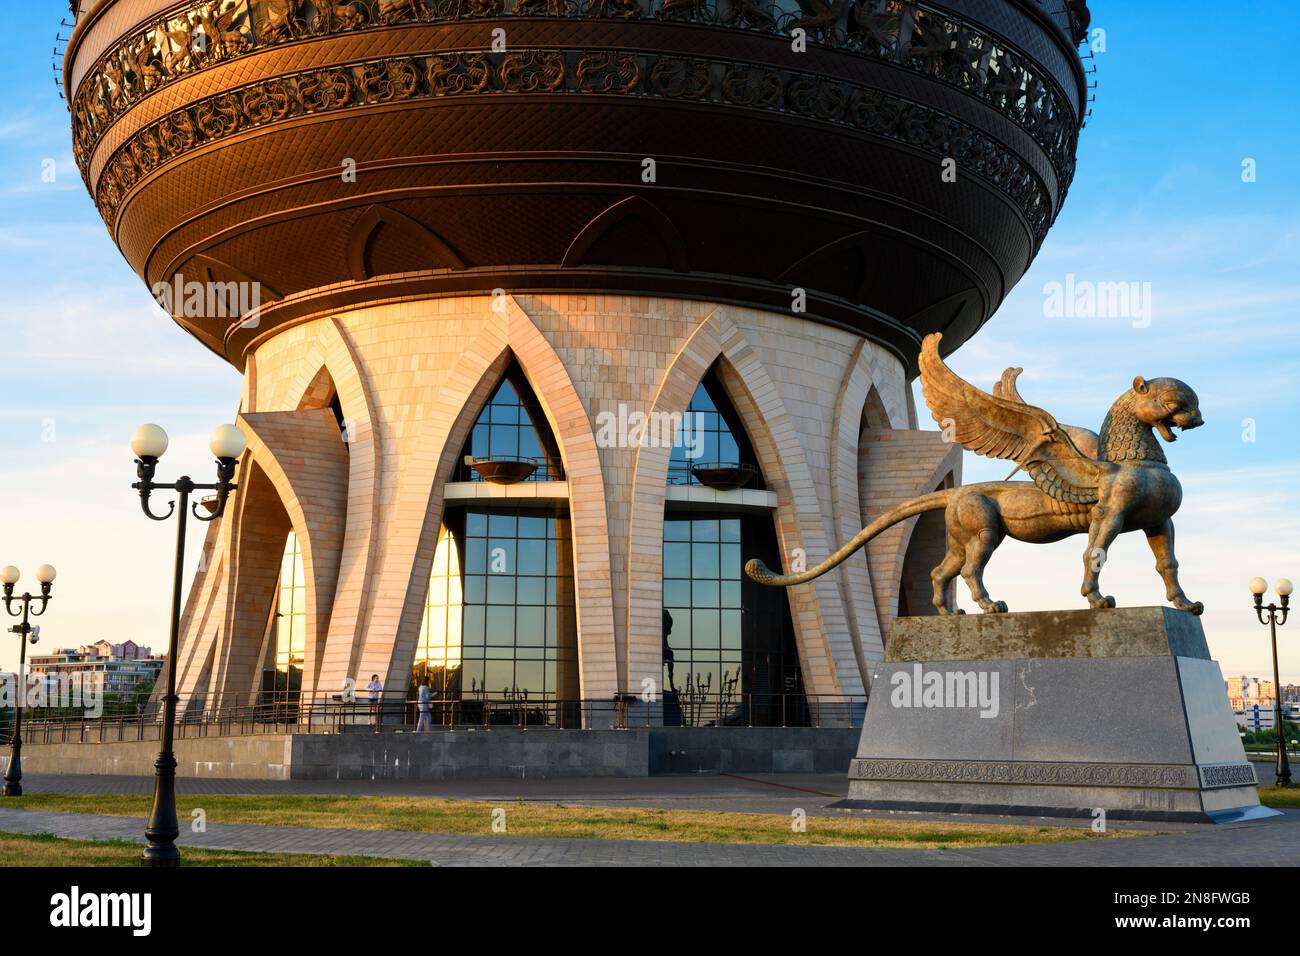 Kazan Wedding Palace (Family Center) in estate, Kazan, Tatarstan, Russia. È il punto di riferimento di Kazan. Edificio insolito, attrattiva turistica Foto Stock